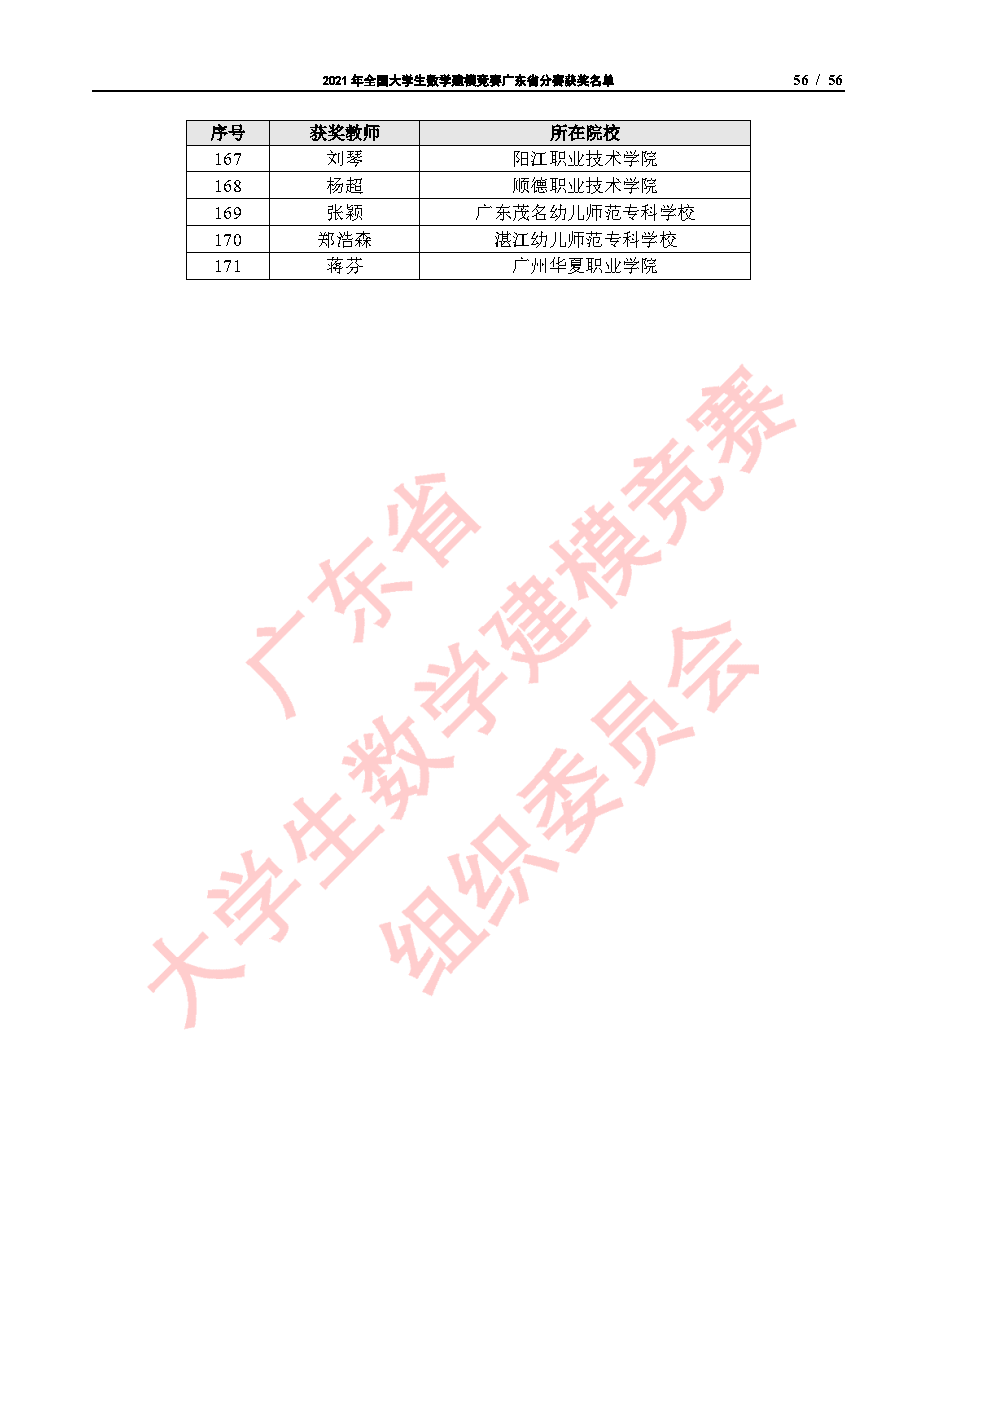 2021年全国大学生数学建模竞赛广东省分赛获奖名单_Page56.png